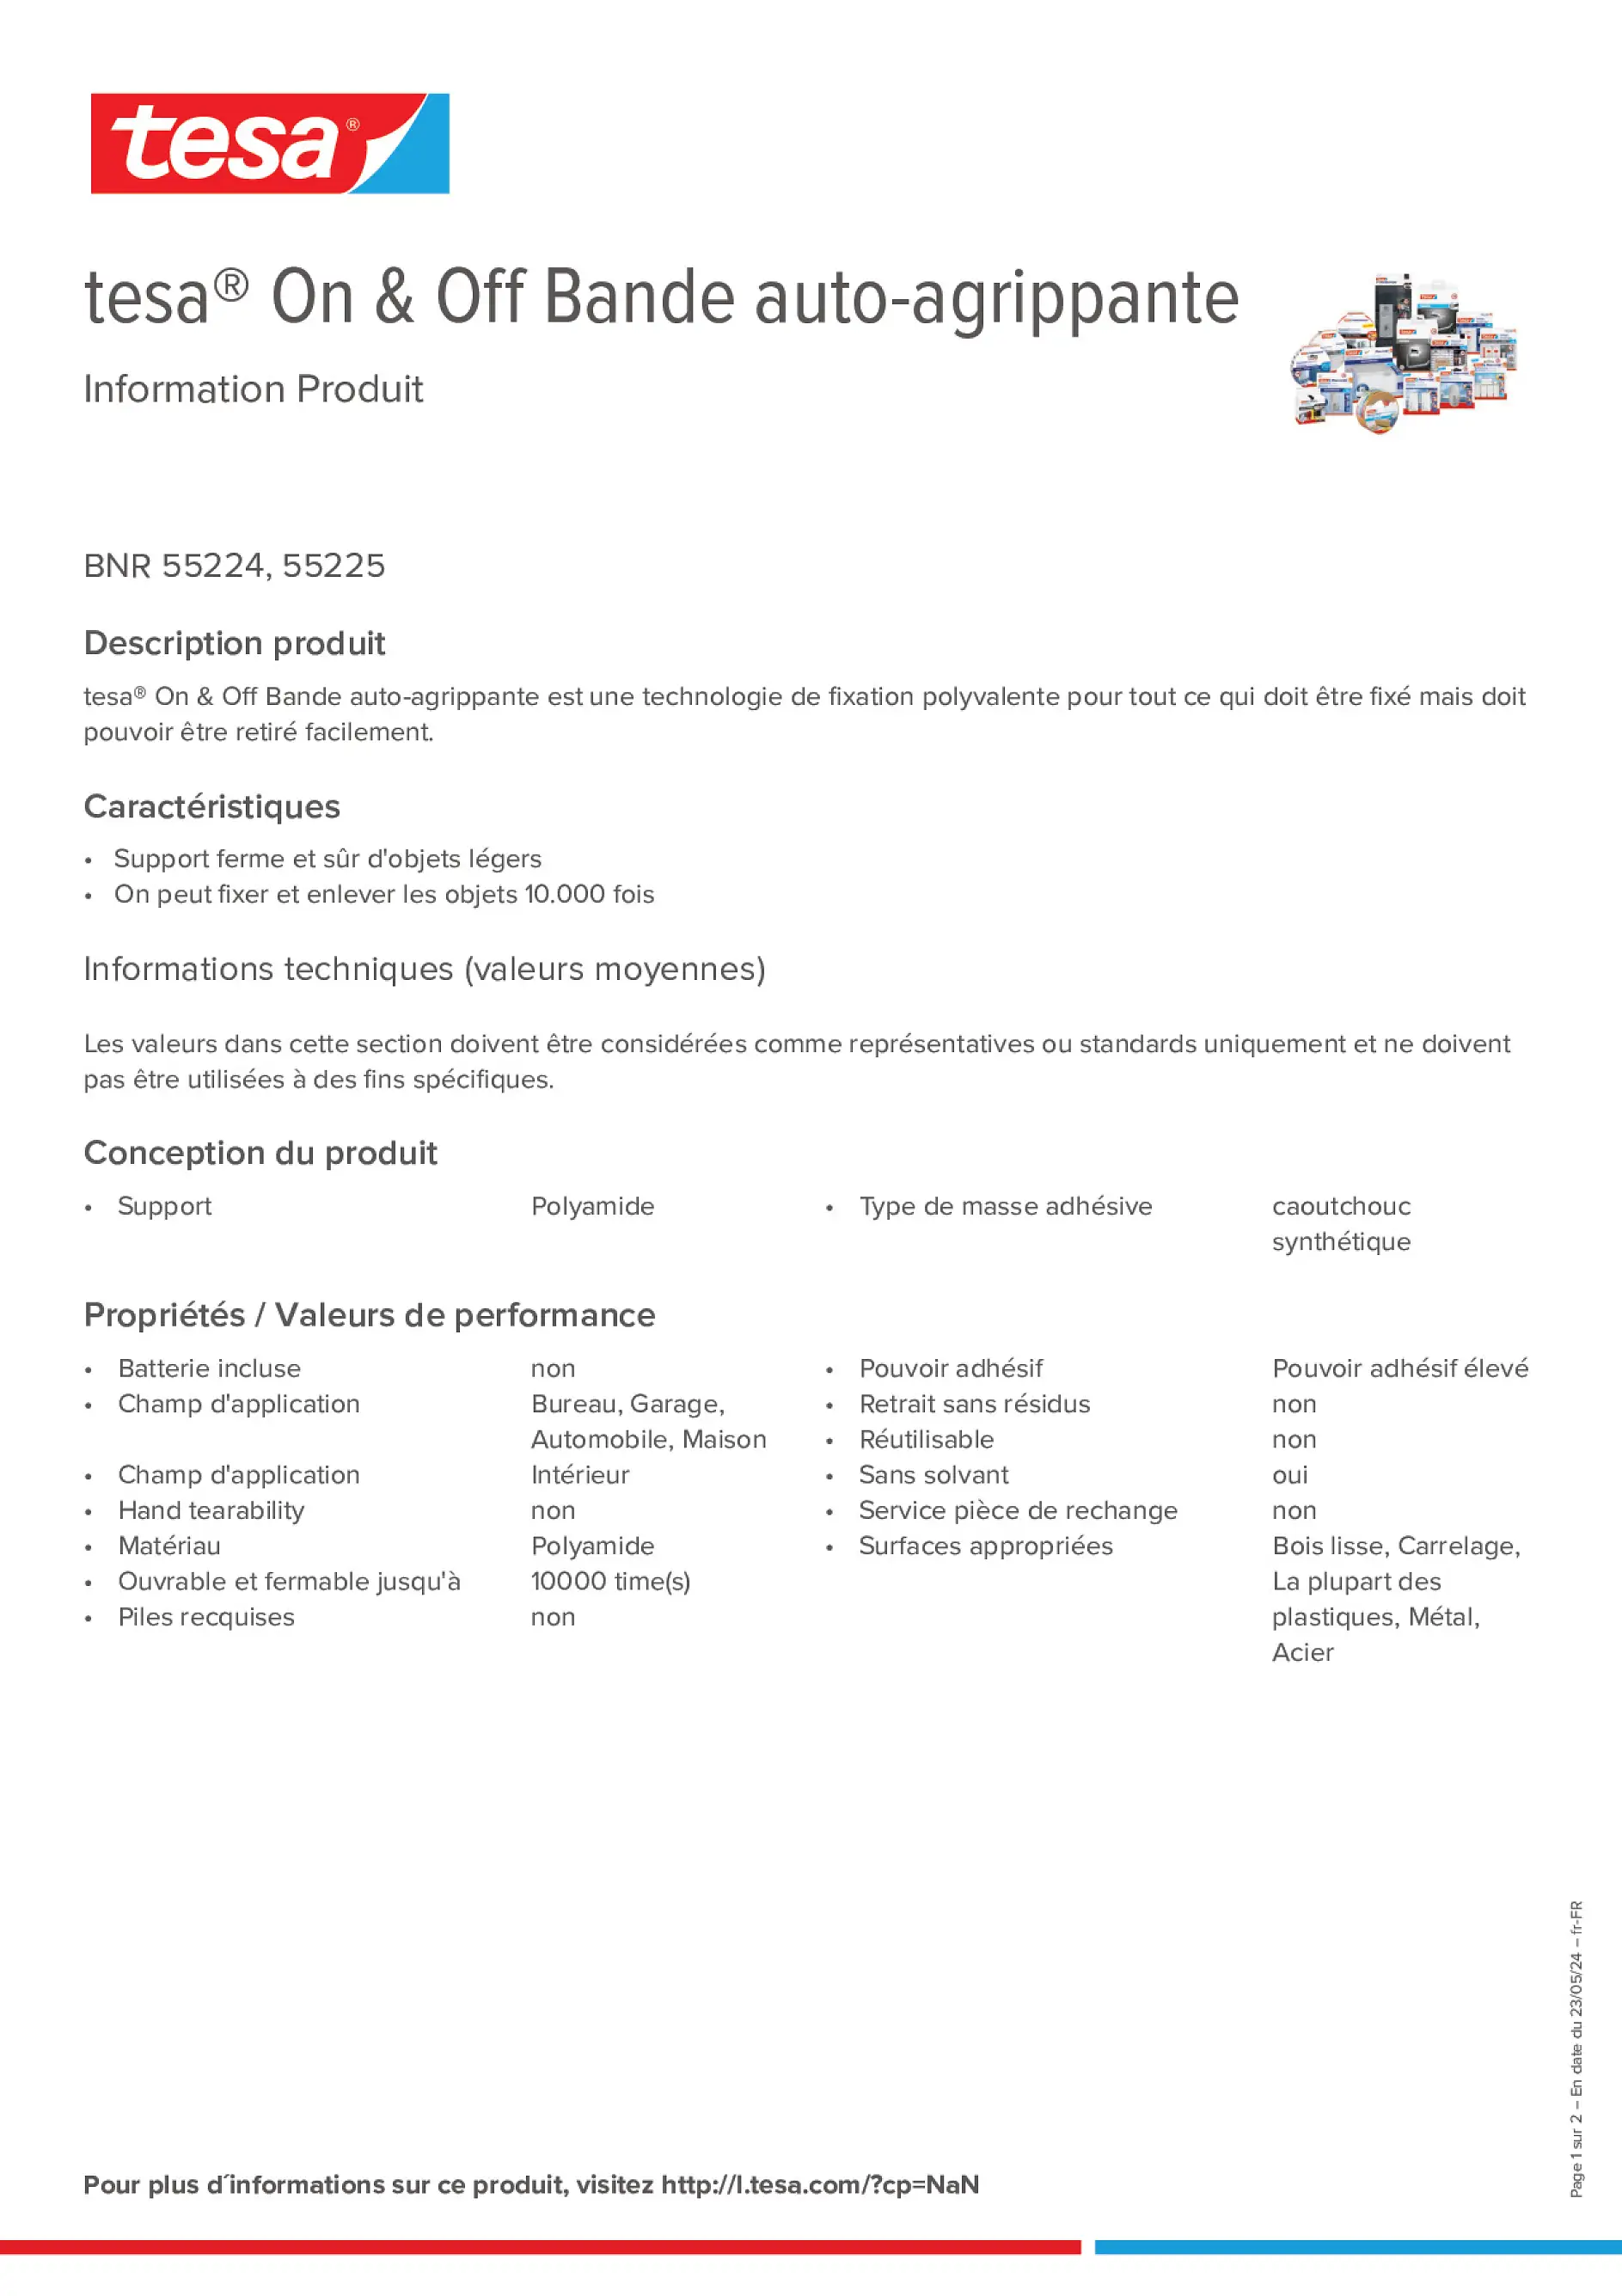 Product information_tesa® On & Off 55225_fr-FR